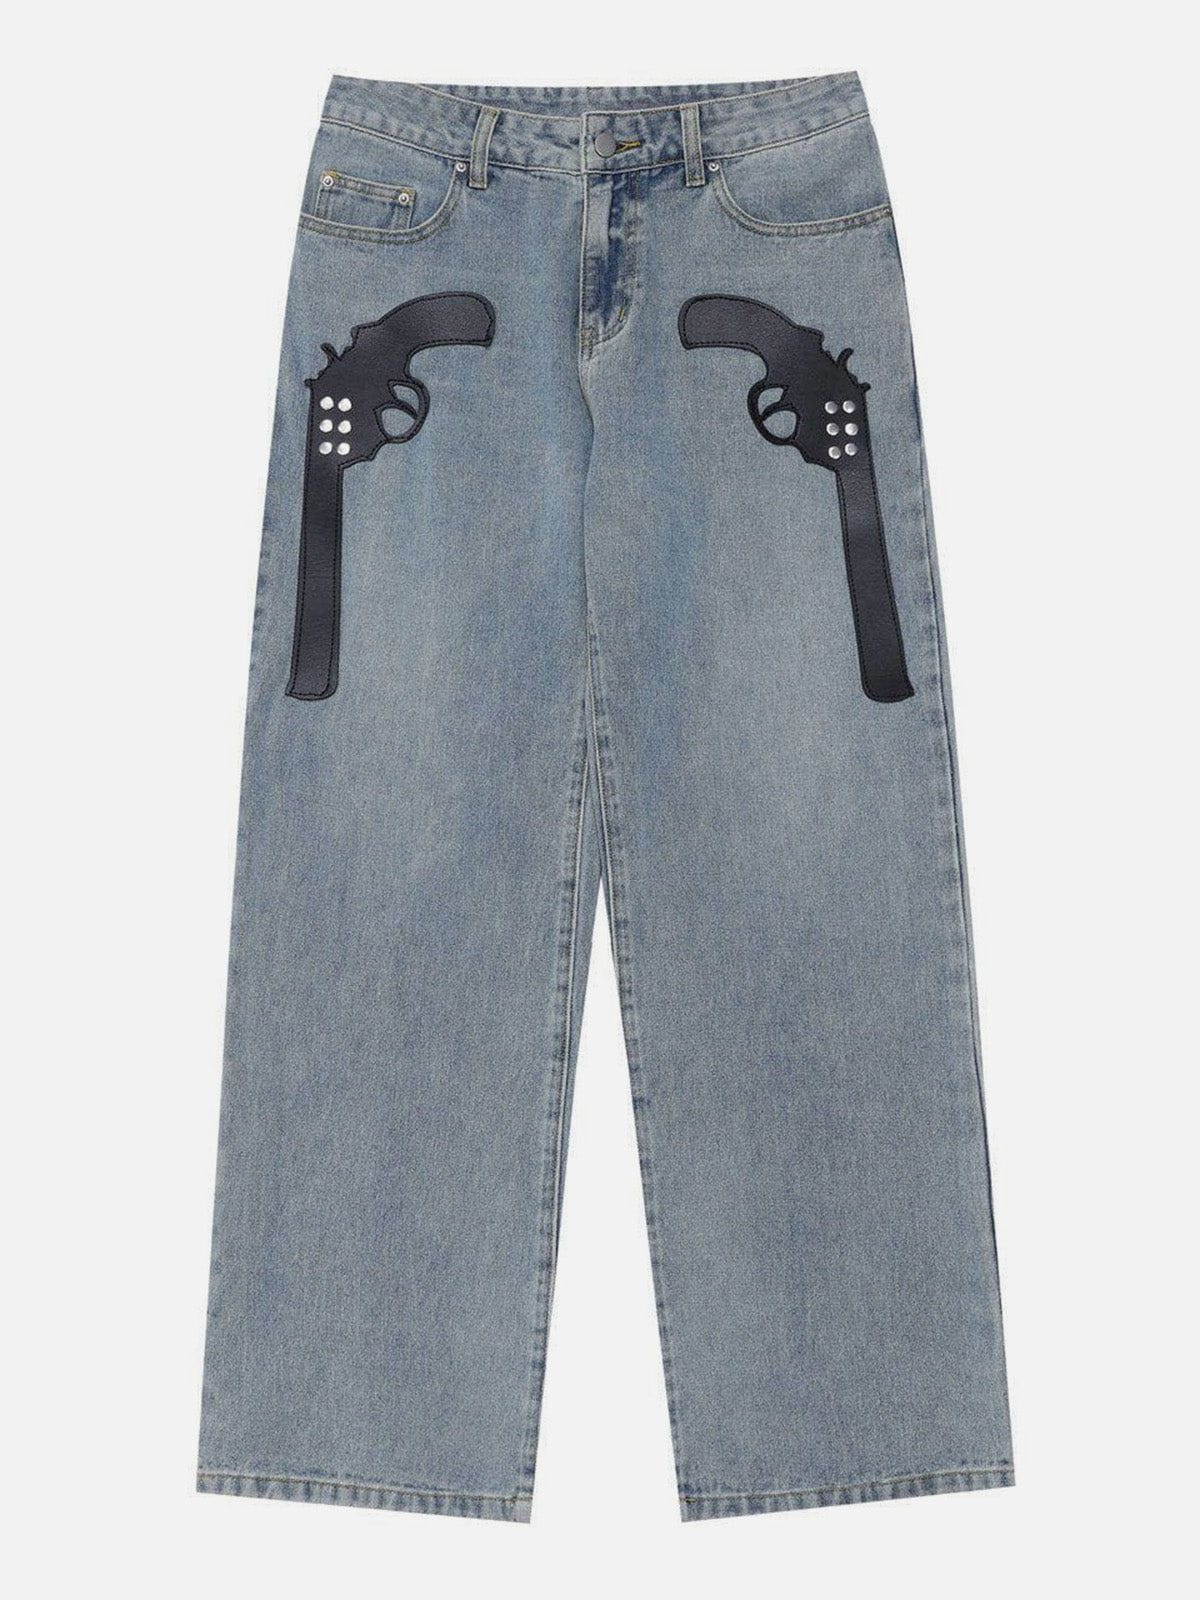 Eprezzy® - Gun Pattern Jeans Streetwear Fashion - eprezzy.com